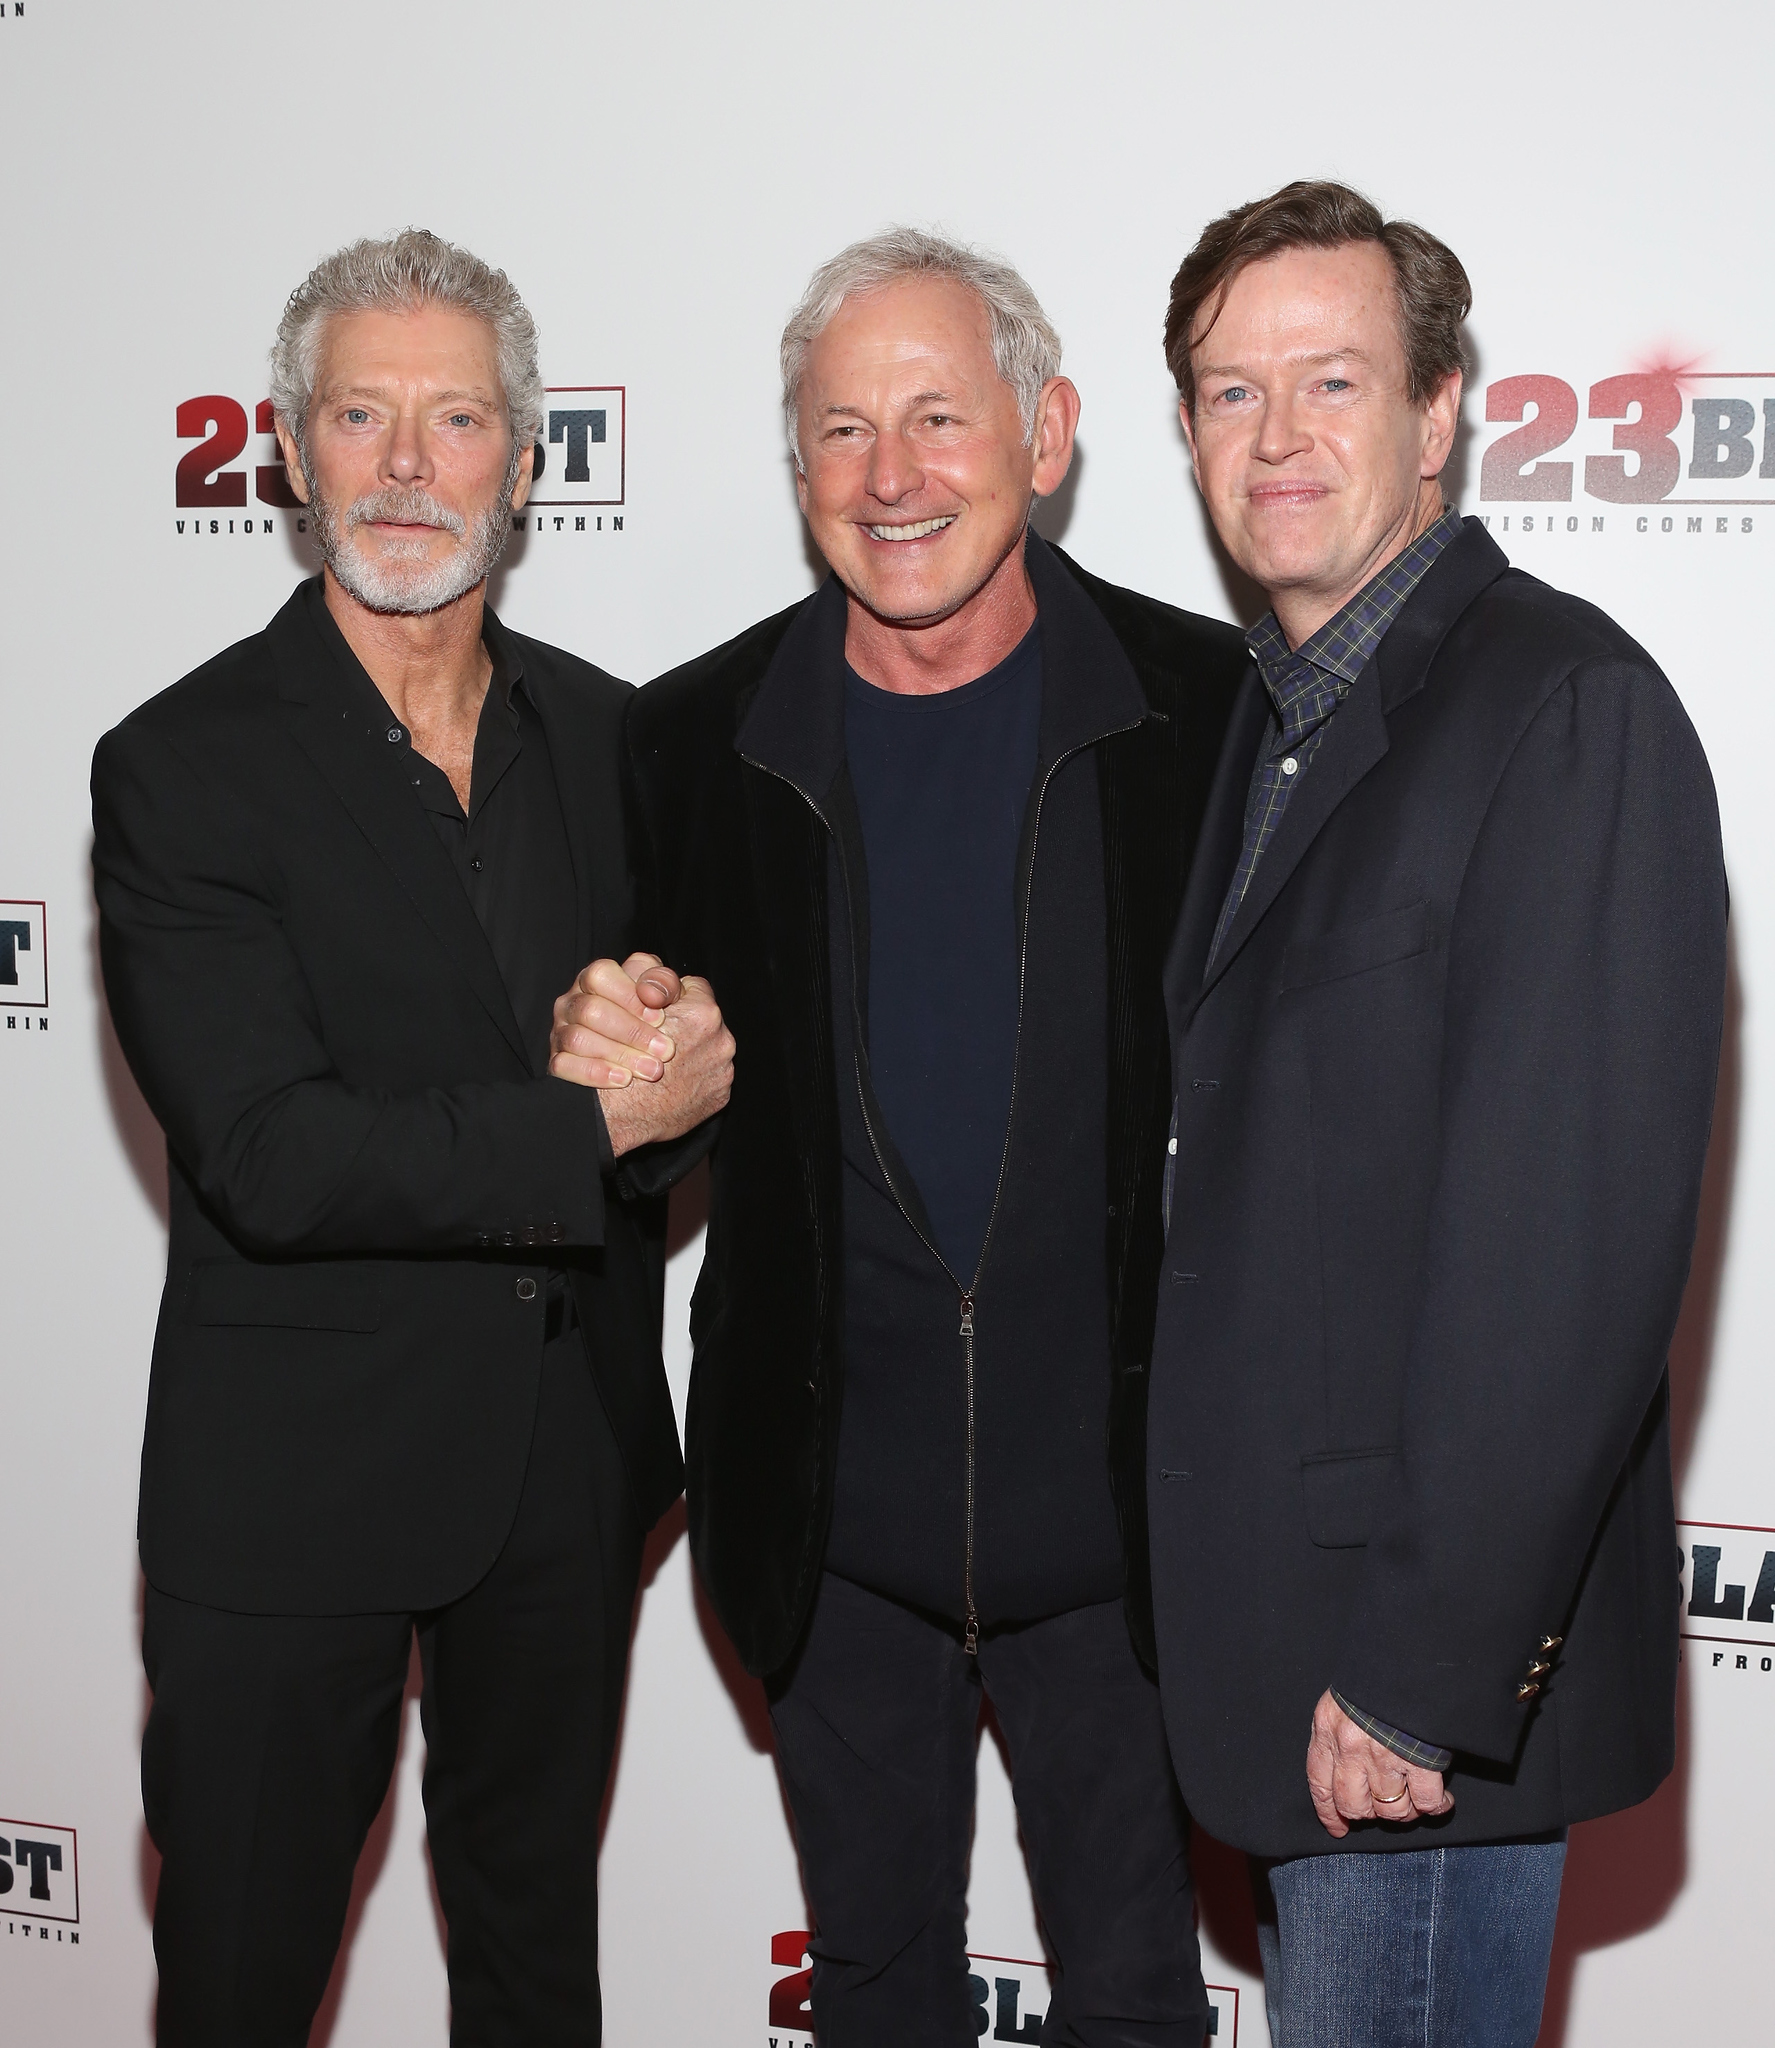 Victor Garber, Stephen Lang and Dylan Baker at event of 23 Blast (2014)